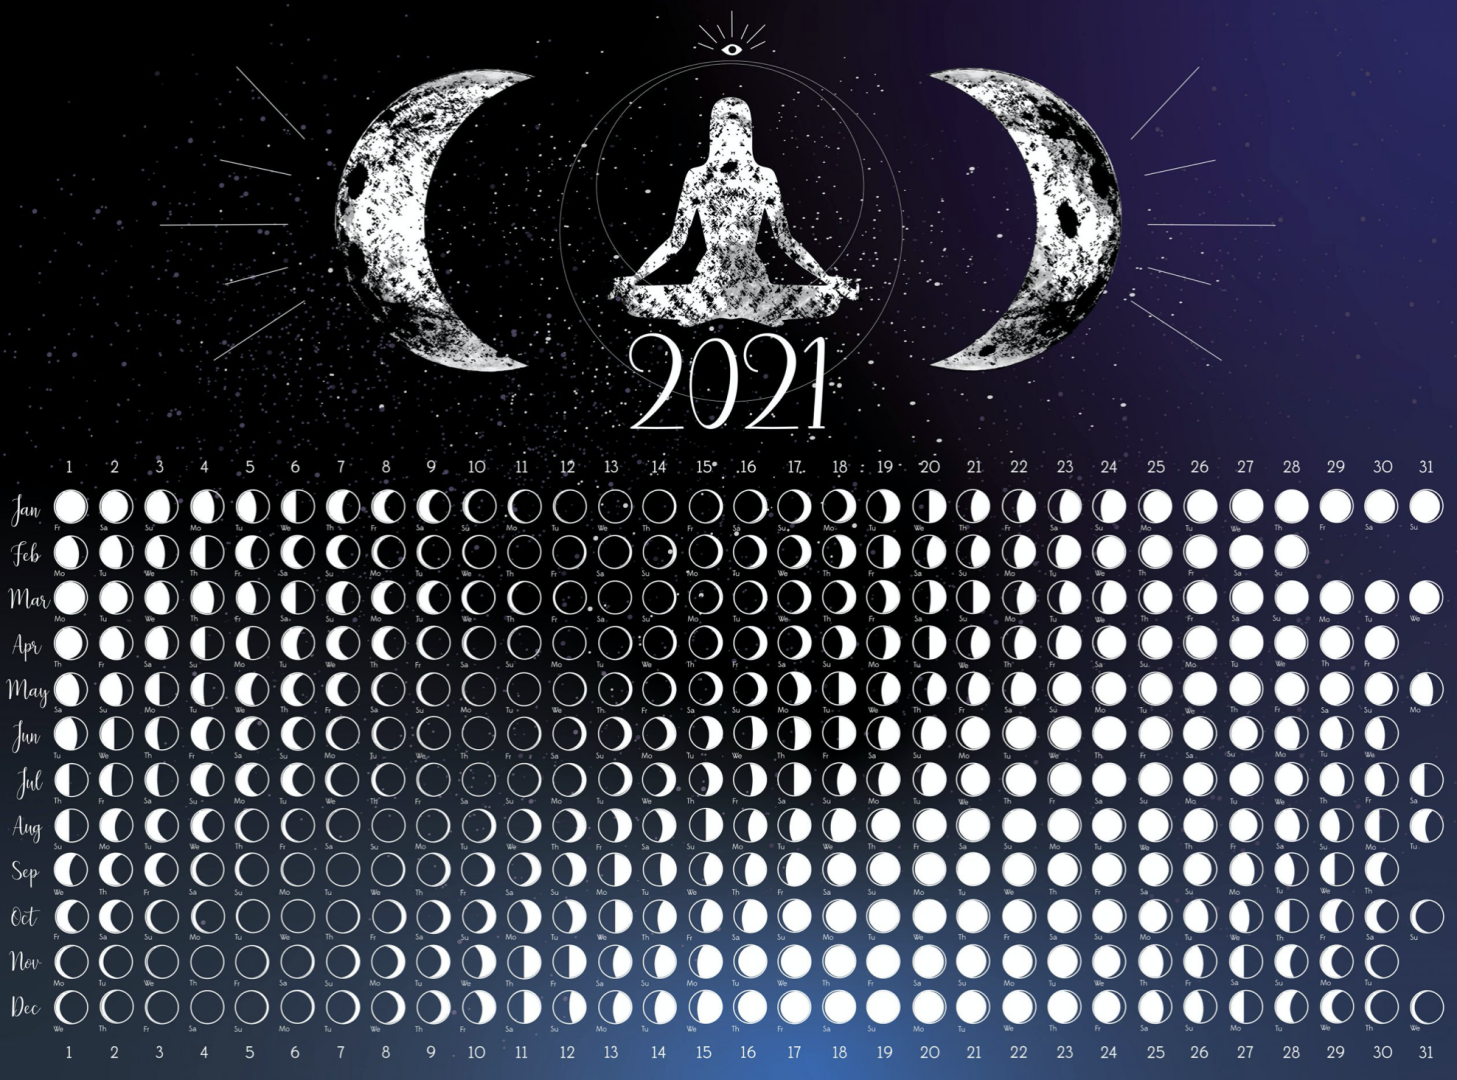 Календарь 2021 Луна лунный. Календарь полнолуний на 2021. Лунный календарь на 2021 год. Фазы Луны 2021 год.